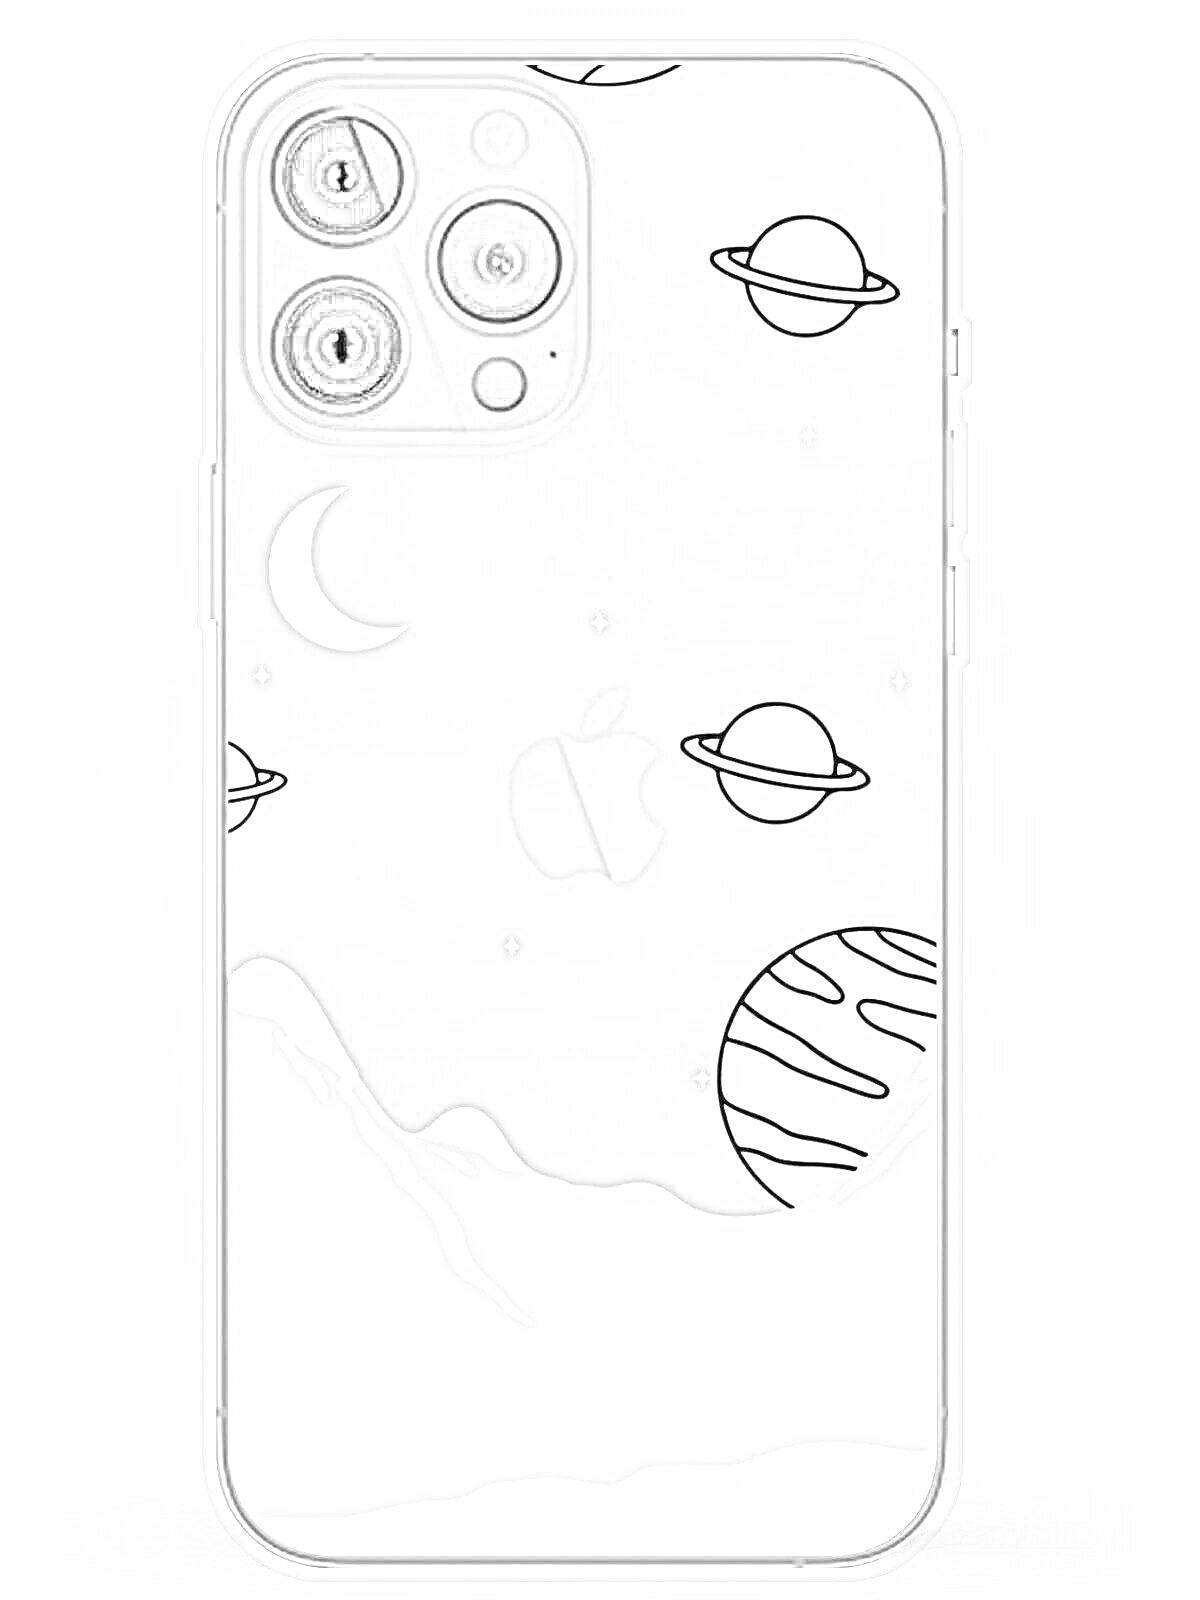 Раскраска iPhone 13 Pro Max с космической темой, планетами, луной и звездами